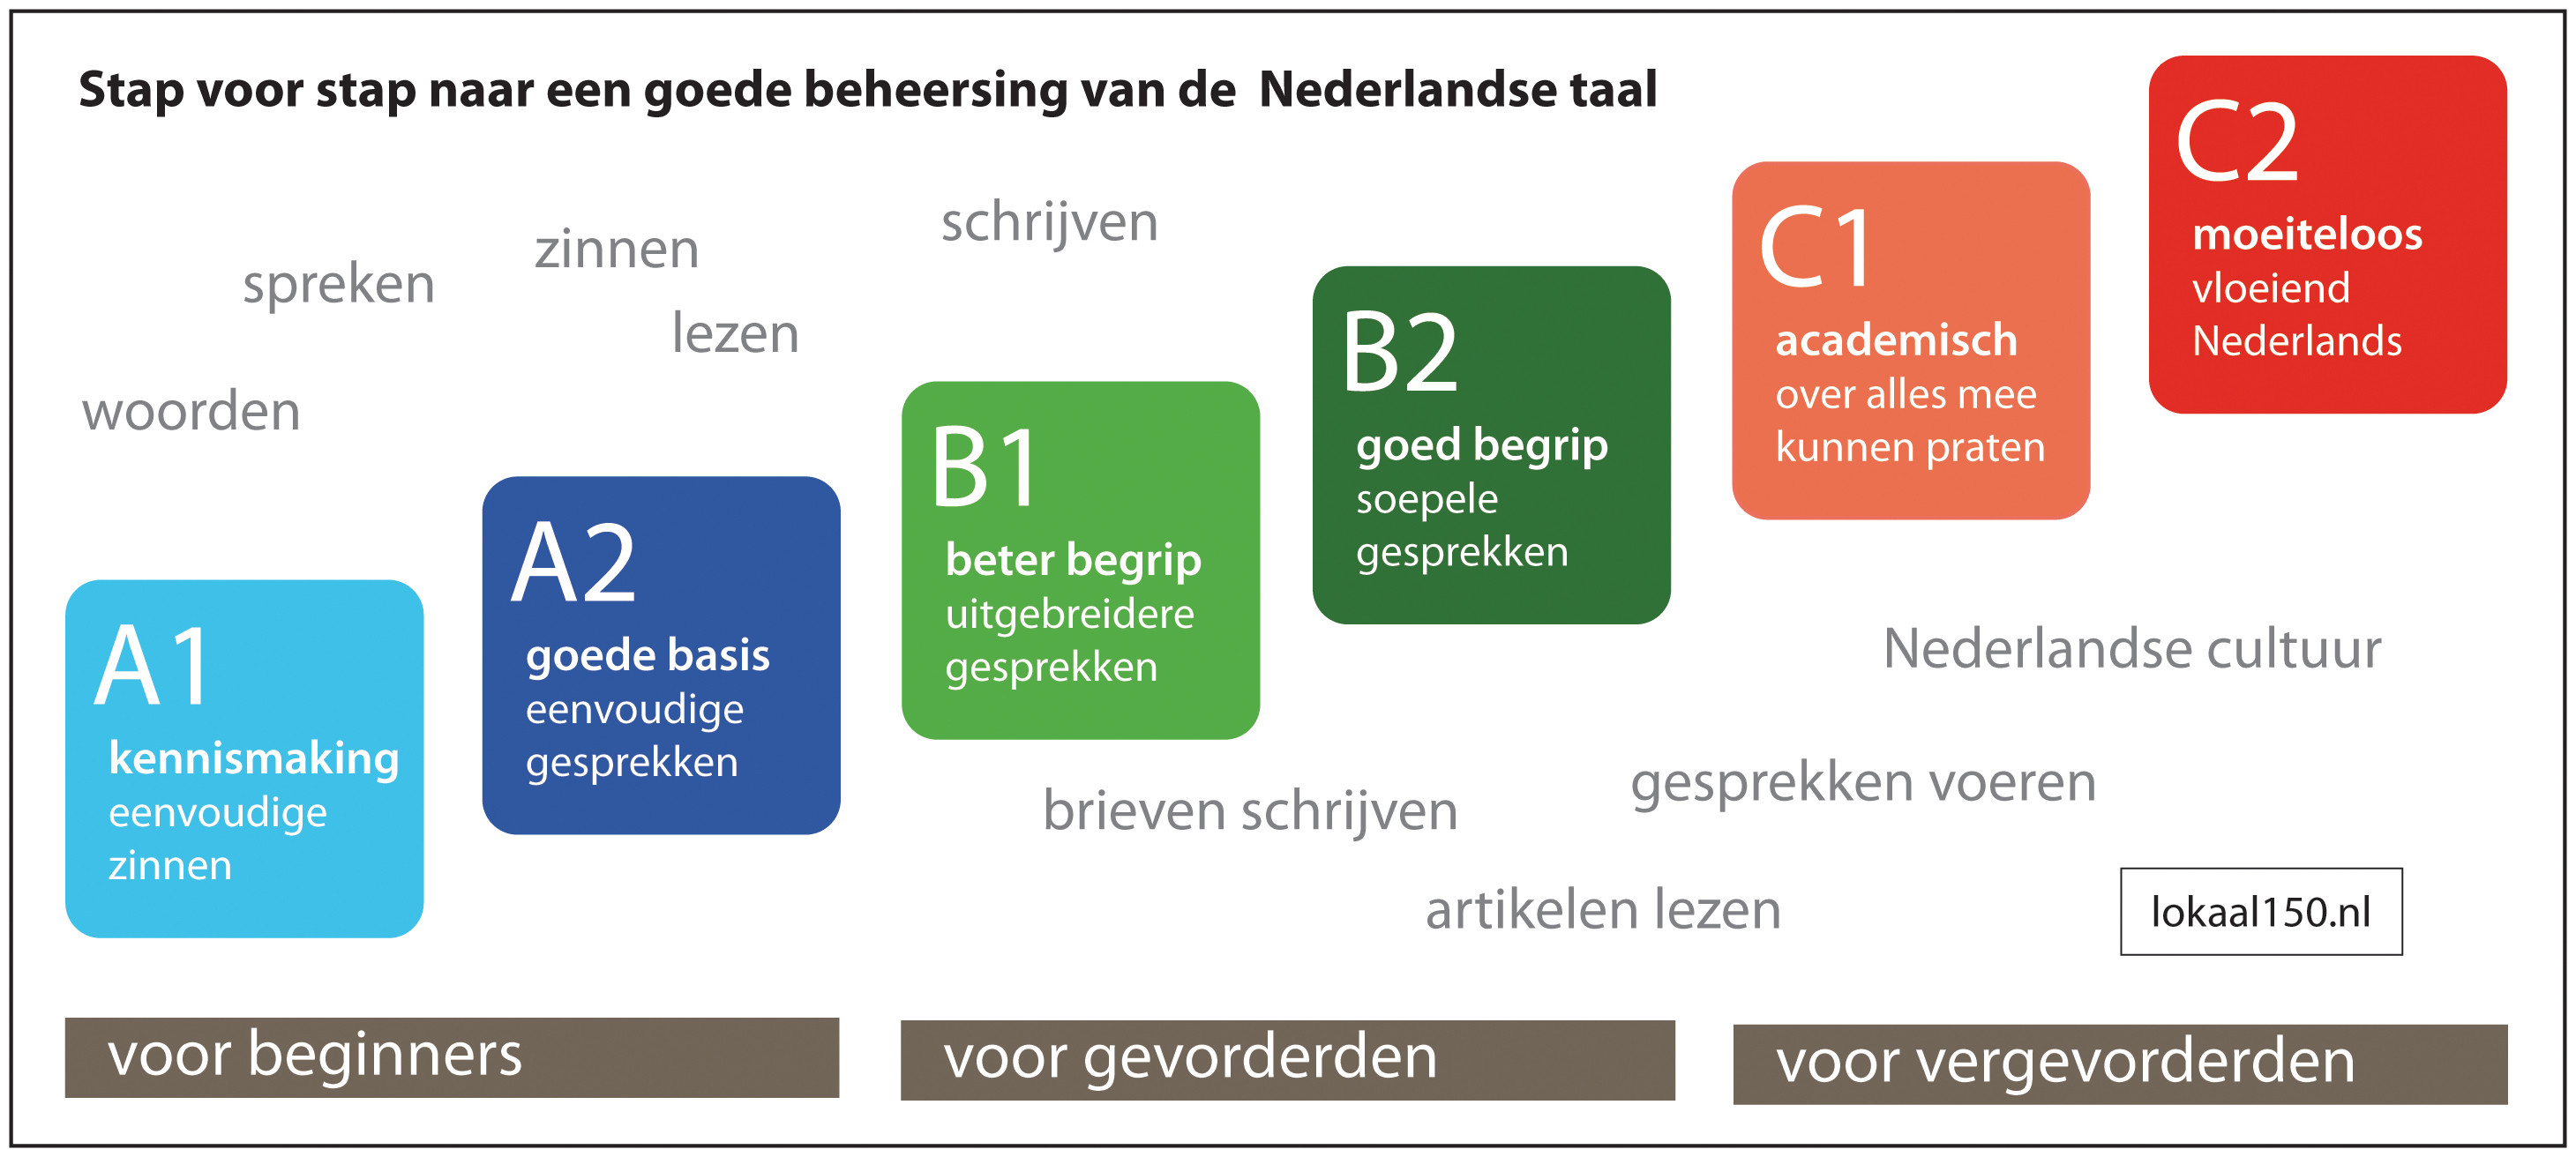 Systematisch de Nederlandse taal beter leren begrijpen, spreken, lezen en schrijven.